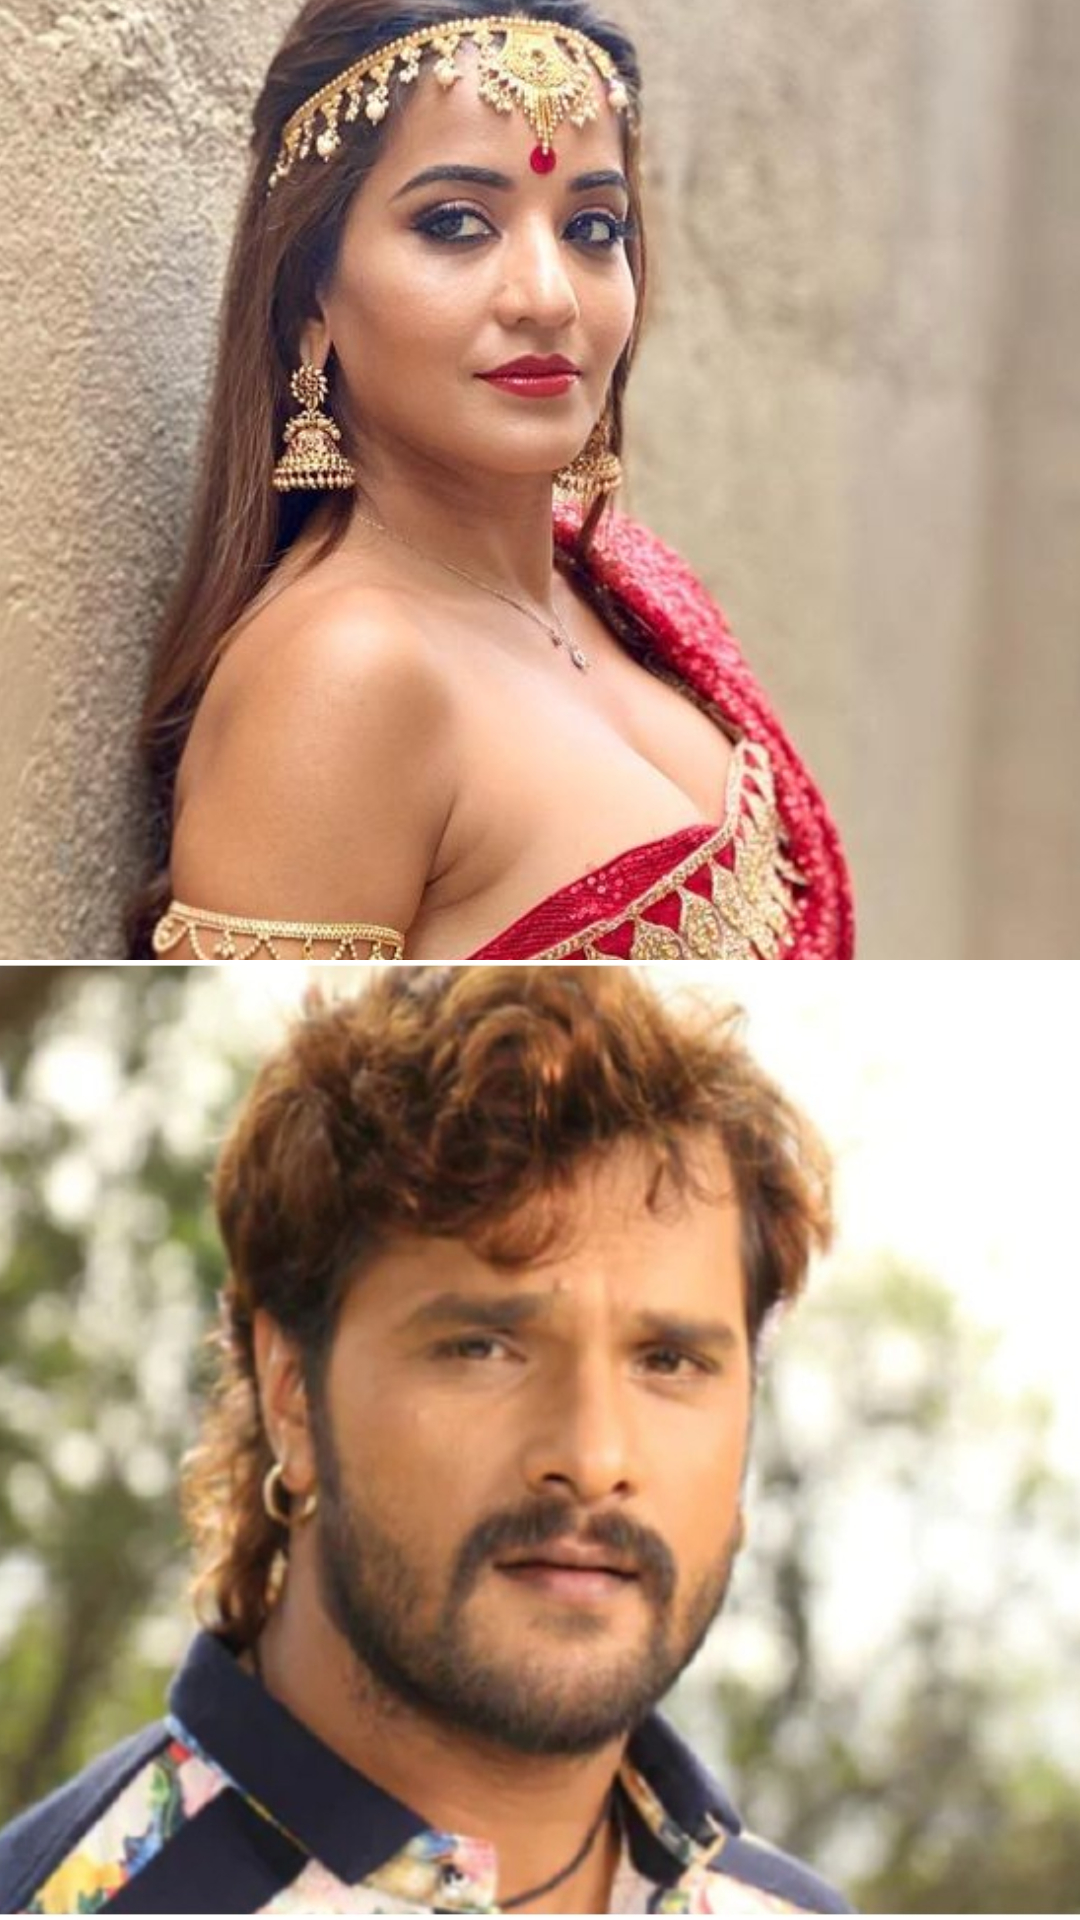 Bhojpuri actors and their real names: Monalisa to Khesari Lal Yadav